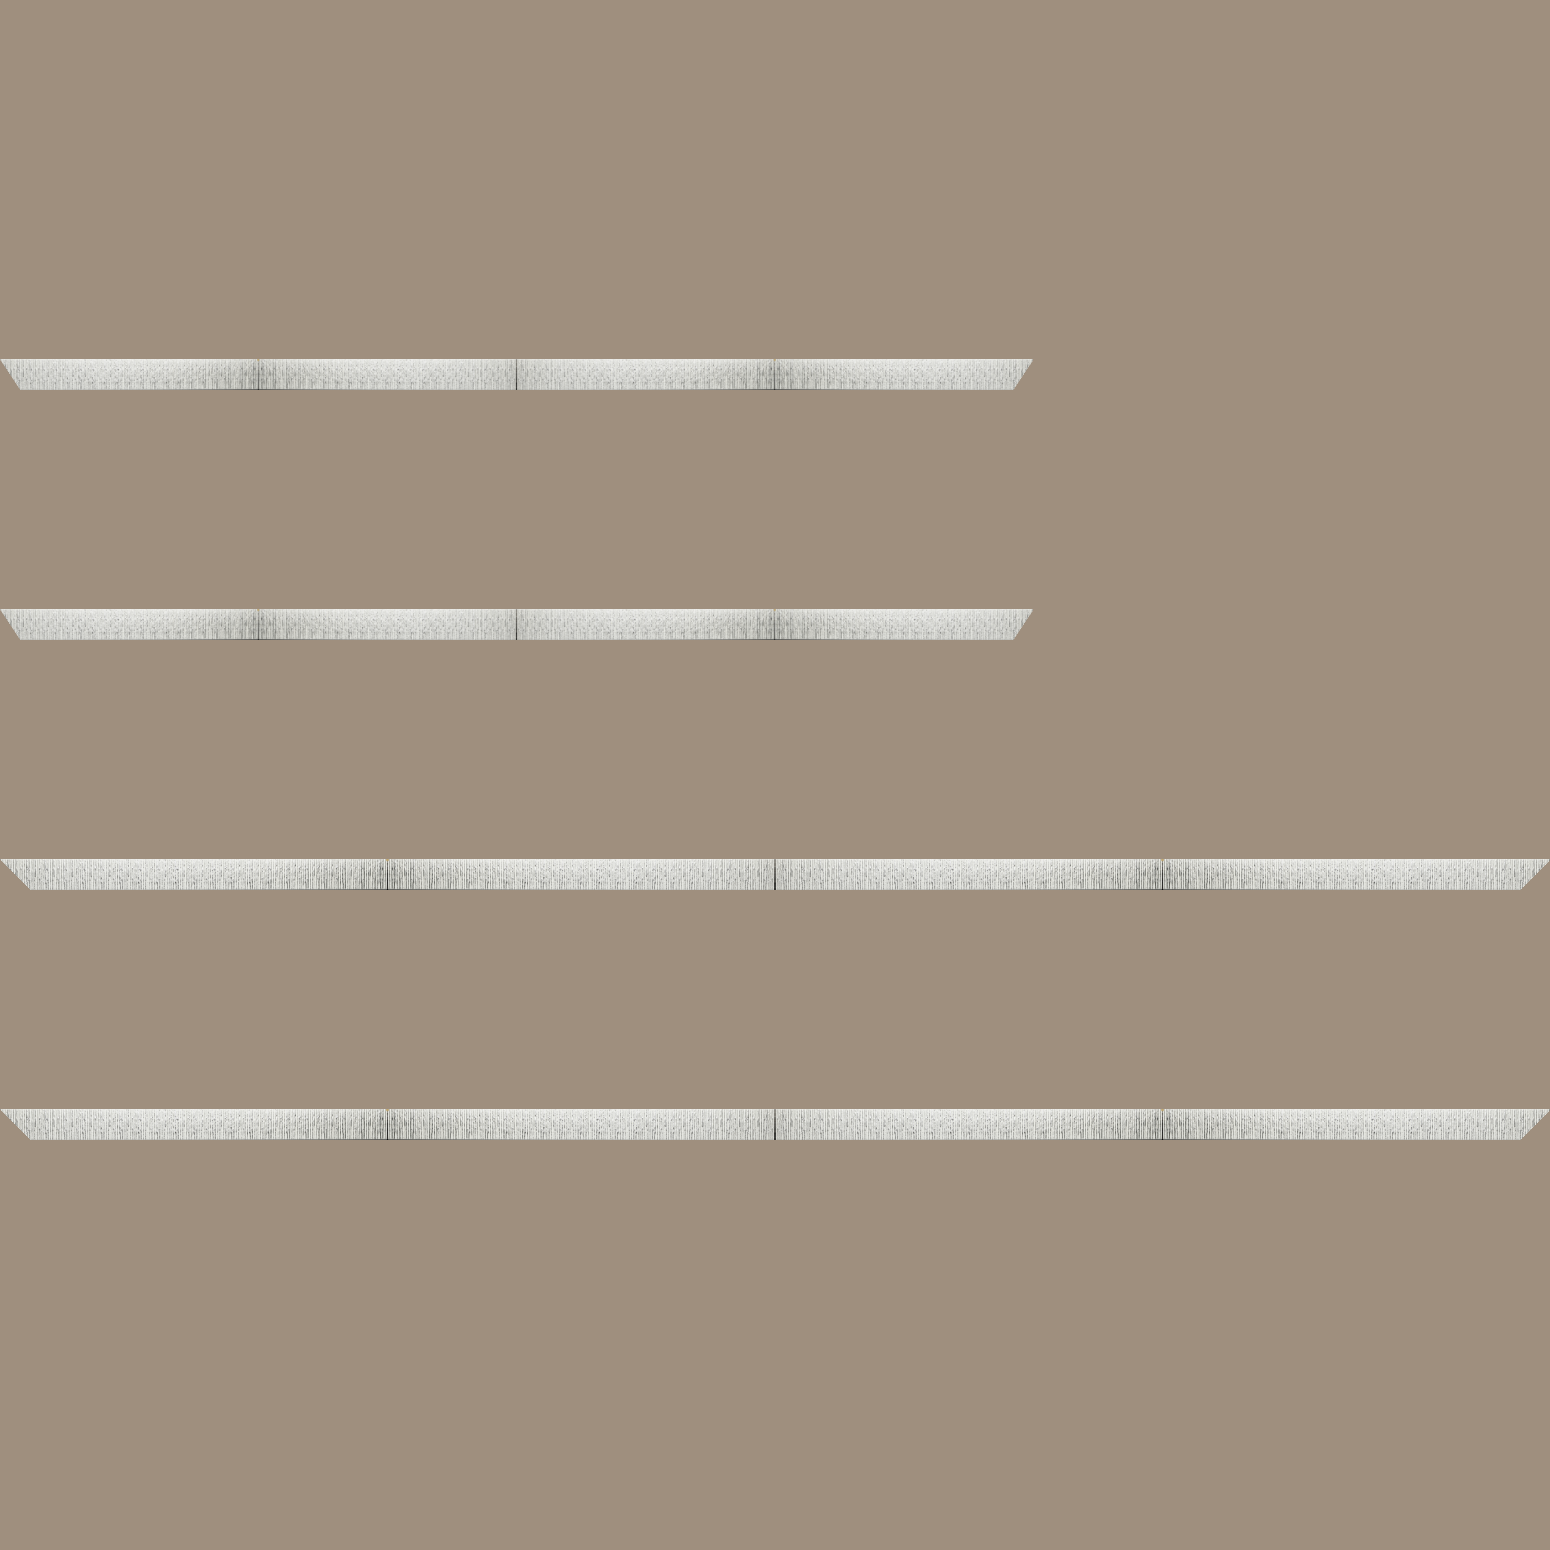 Baguette bois profil plat largeur 10.5cm couleur blanc mat strié argent chromé en relief - 50x60